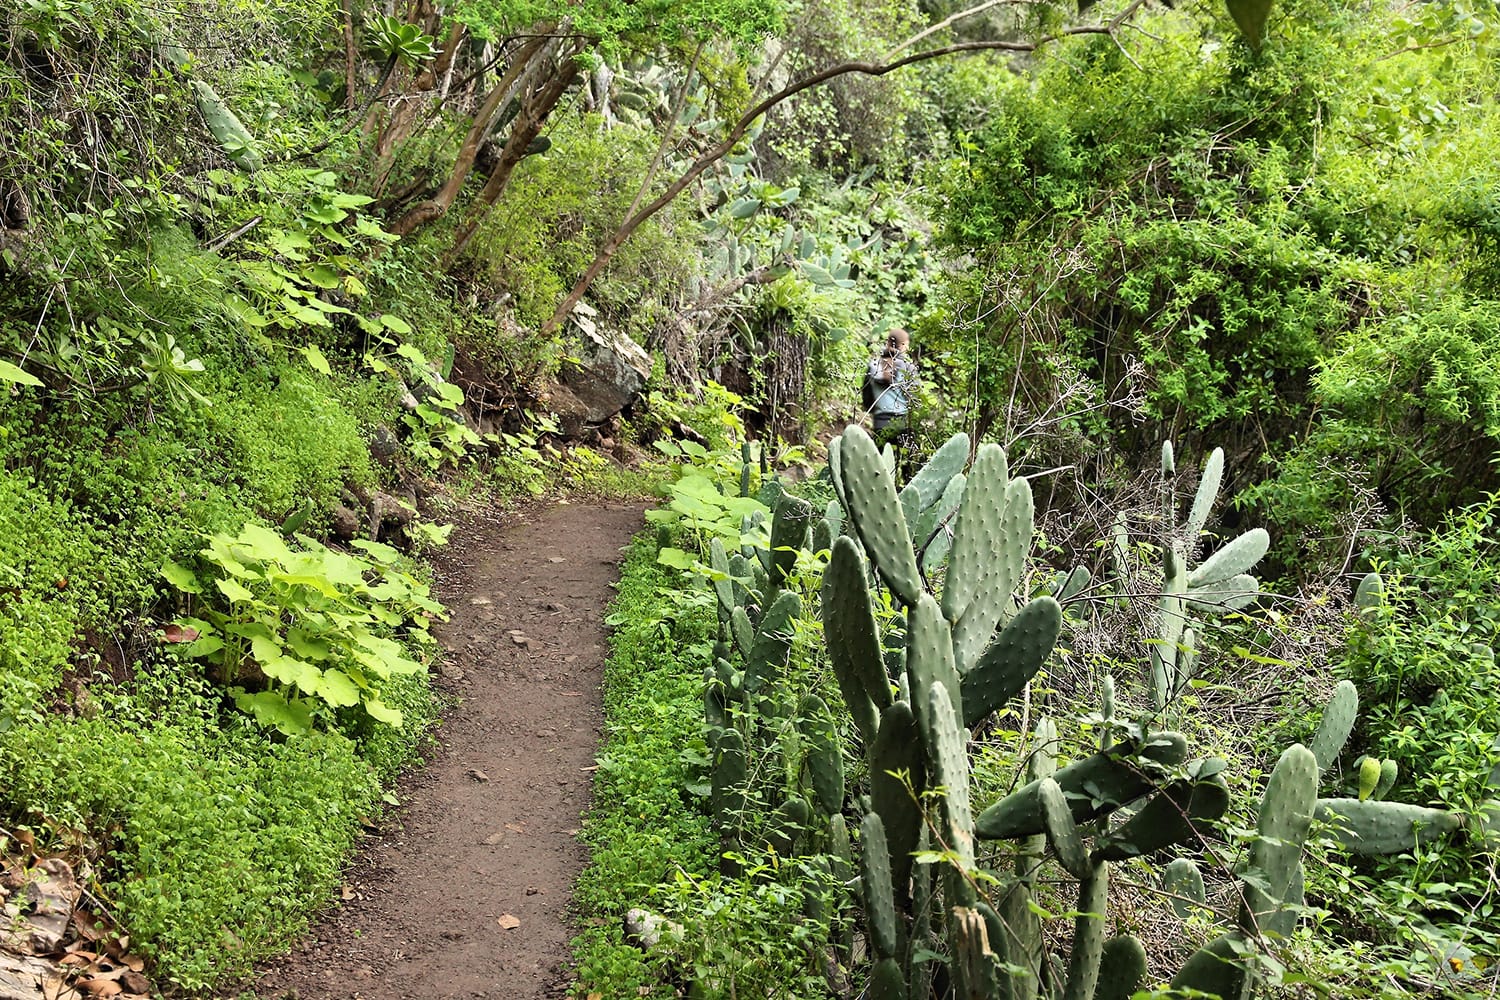 Laurel forest of Tilos de Moya in Gran Canaria, Spain